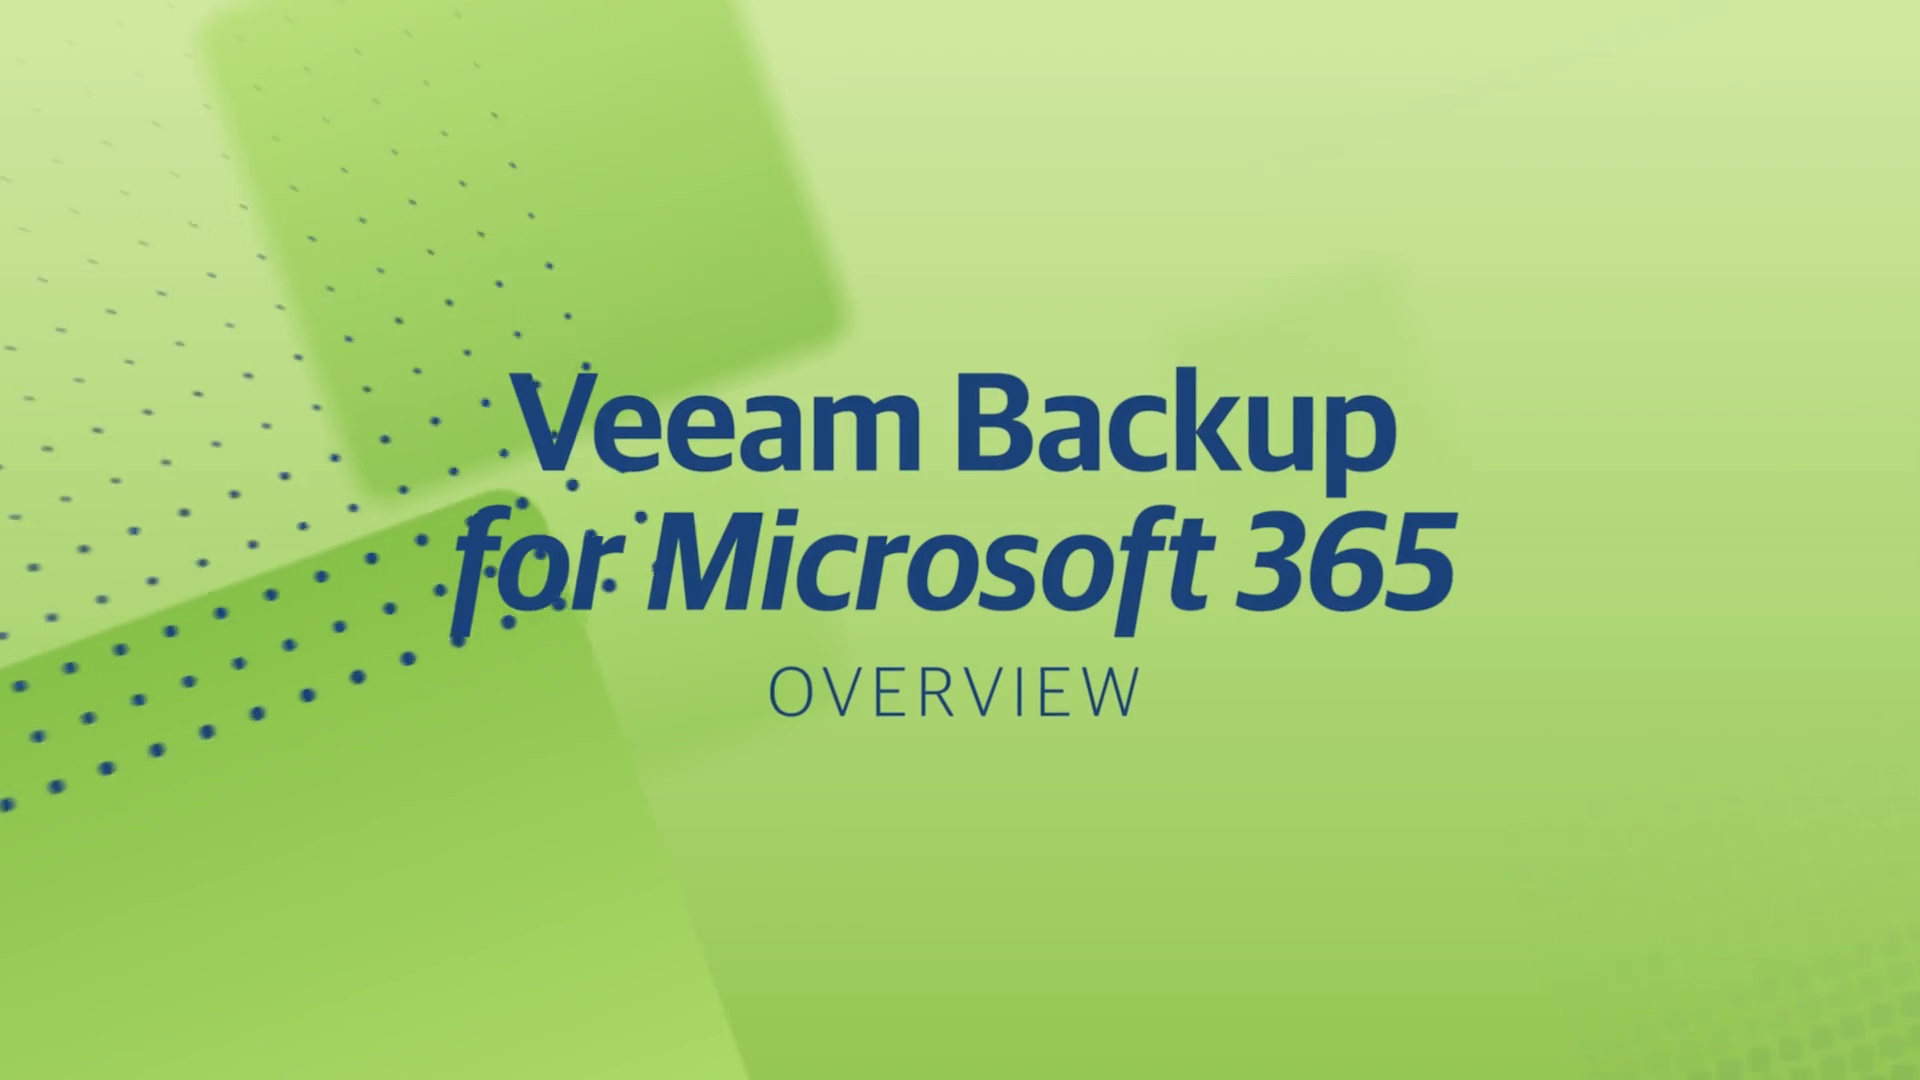 Haga backup de los datos de Office 365 con Veeam Backup for Microsoft 365